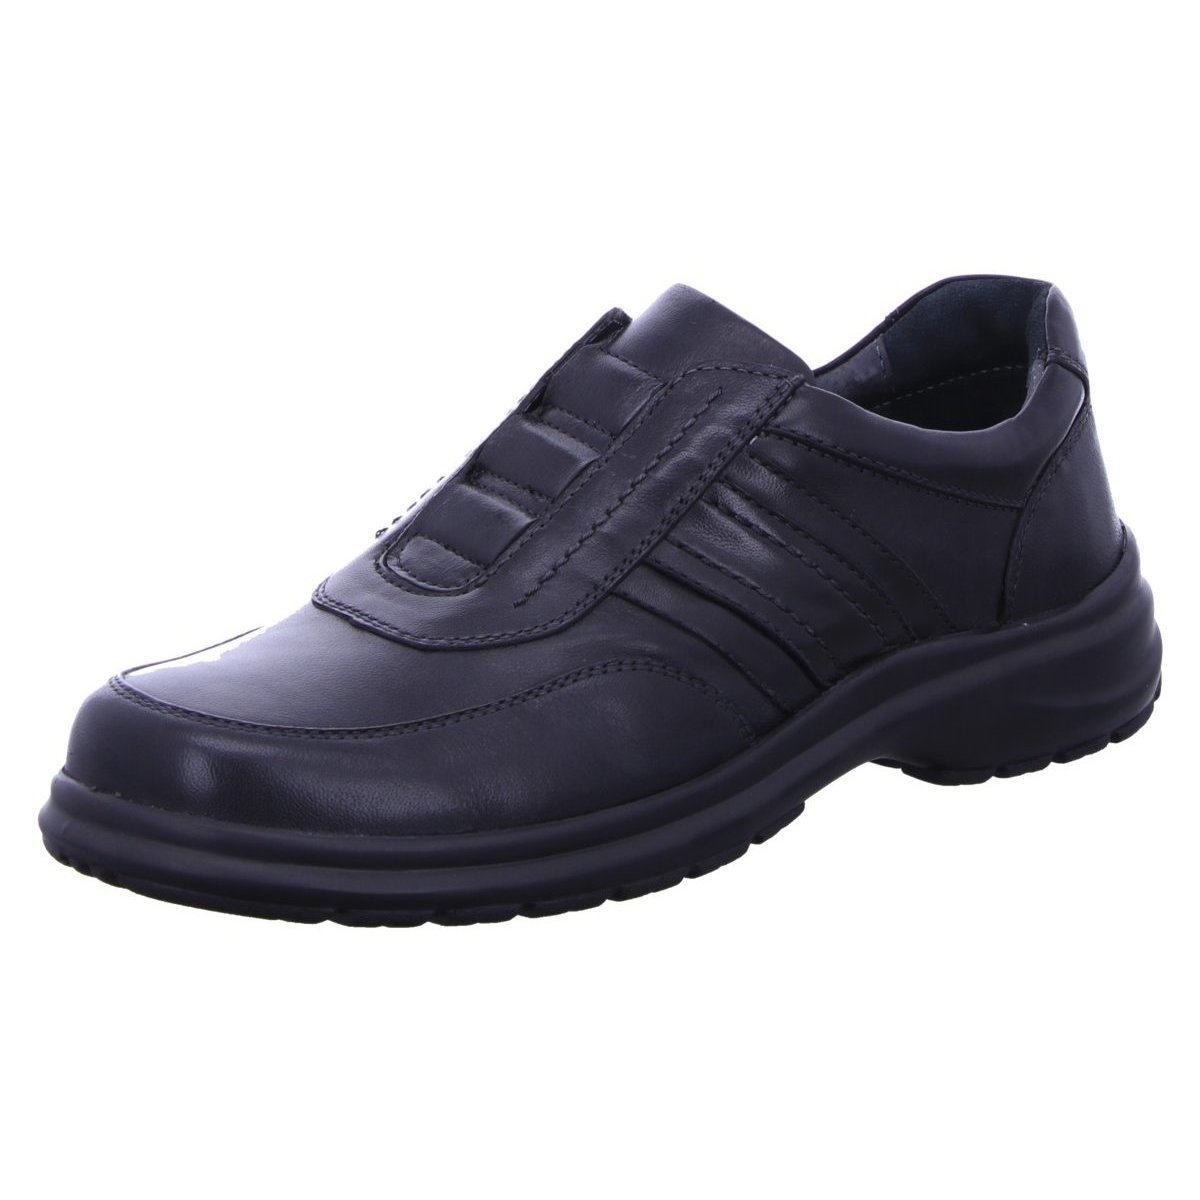 Schuhe Herren Slipper Comfortabel Slipper 630048-01 Schwarz